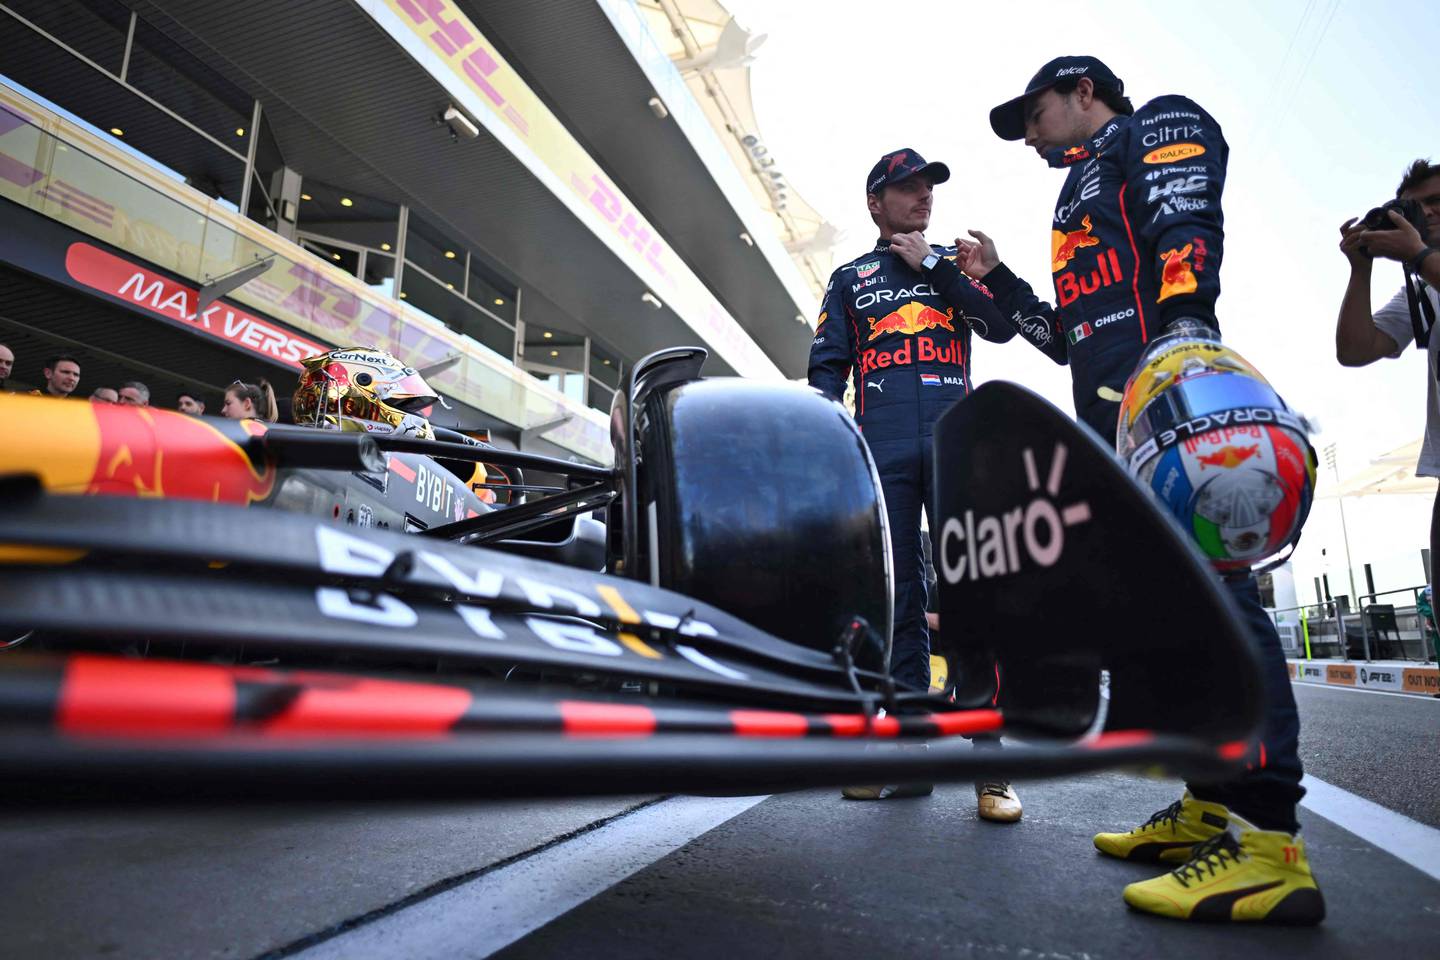 Le pilote néerlandais de Red Bull, Max Verstappen, discute avec le pilote mexicain de Red Bull, Sergio Perez, avant une séance photo d'équipe avant le Grand Prix de Formule 1 d'Abu Dhabi.  AFP